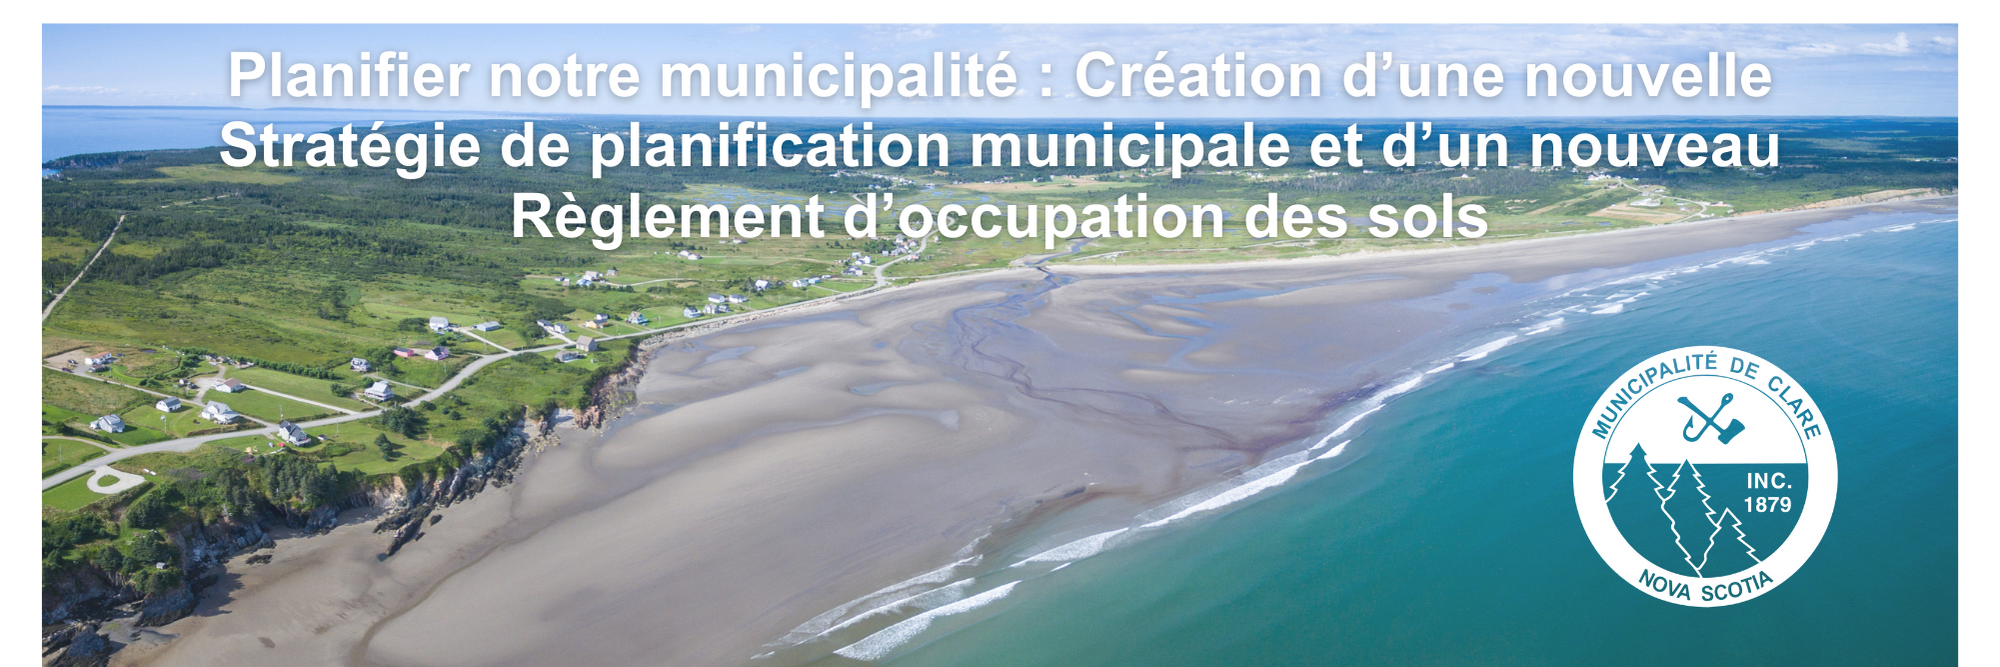 Une photo aérienne de la plage de Mavillette et le texte " Planifier notre municipalité : Création d'une nouvelle Stratégie de planification municipale et d'un nouveau Règlement d'occupation des sols".